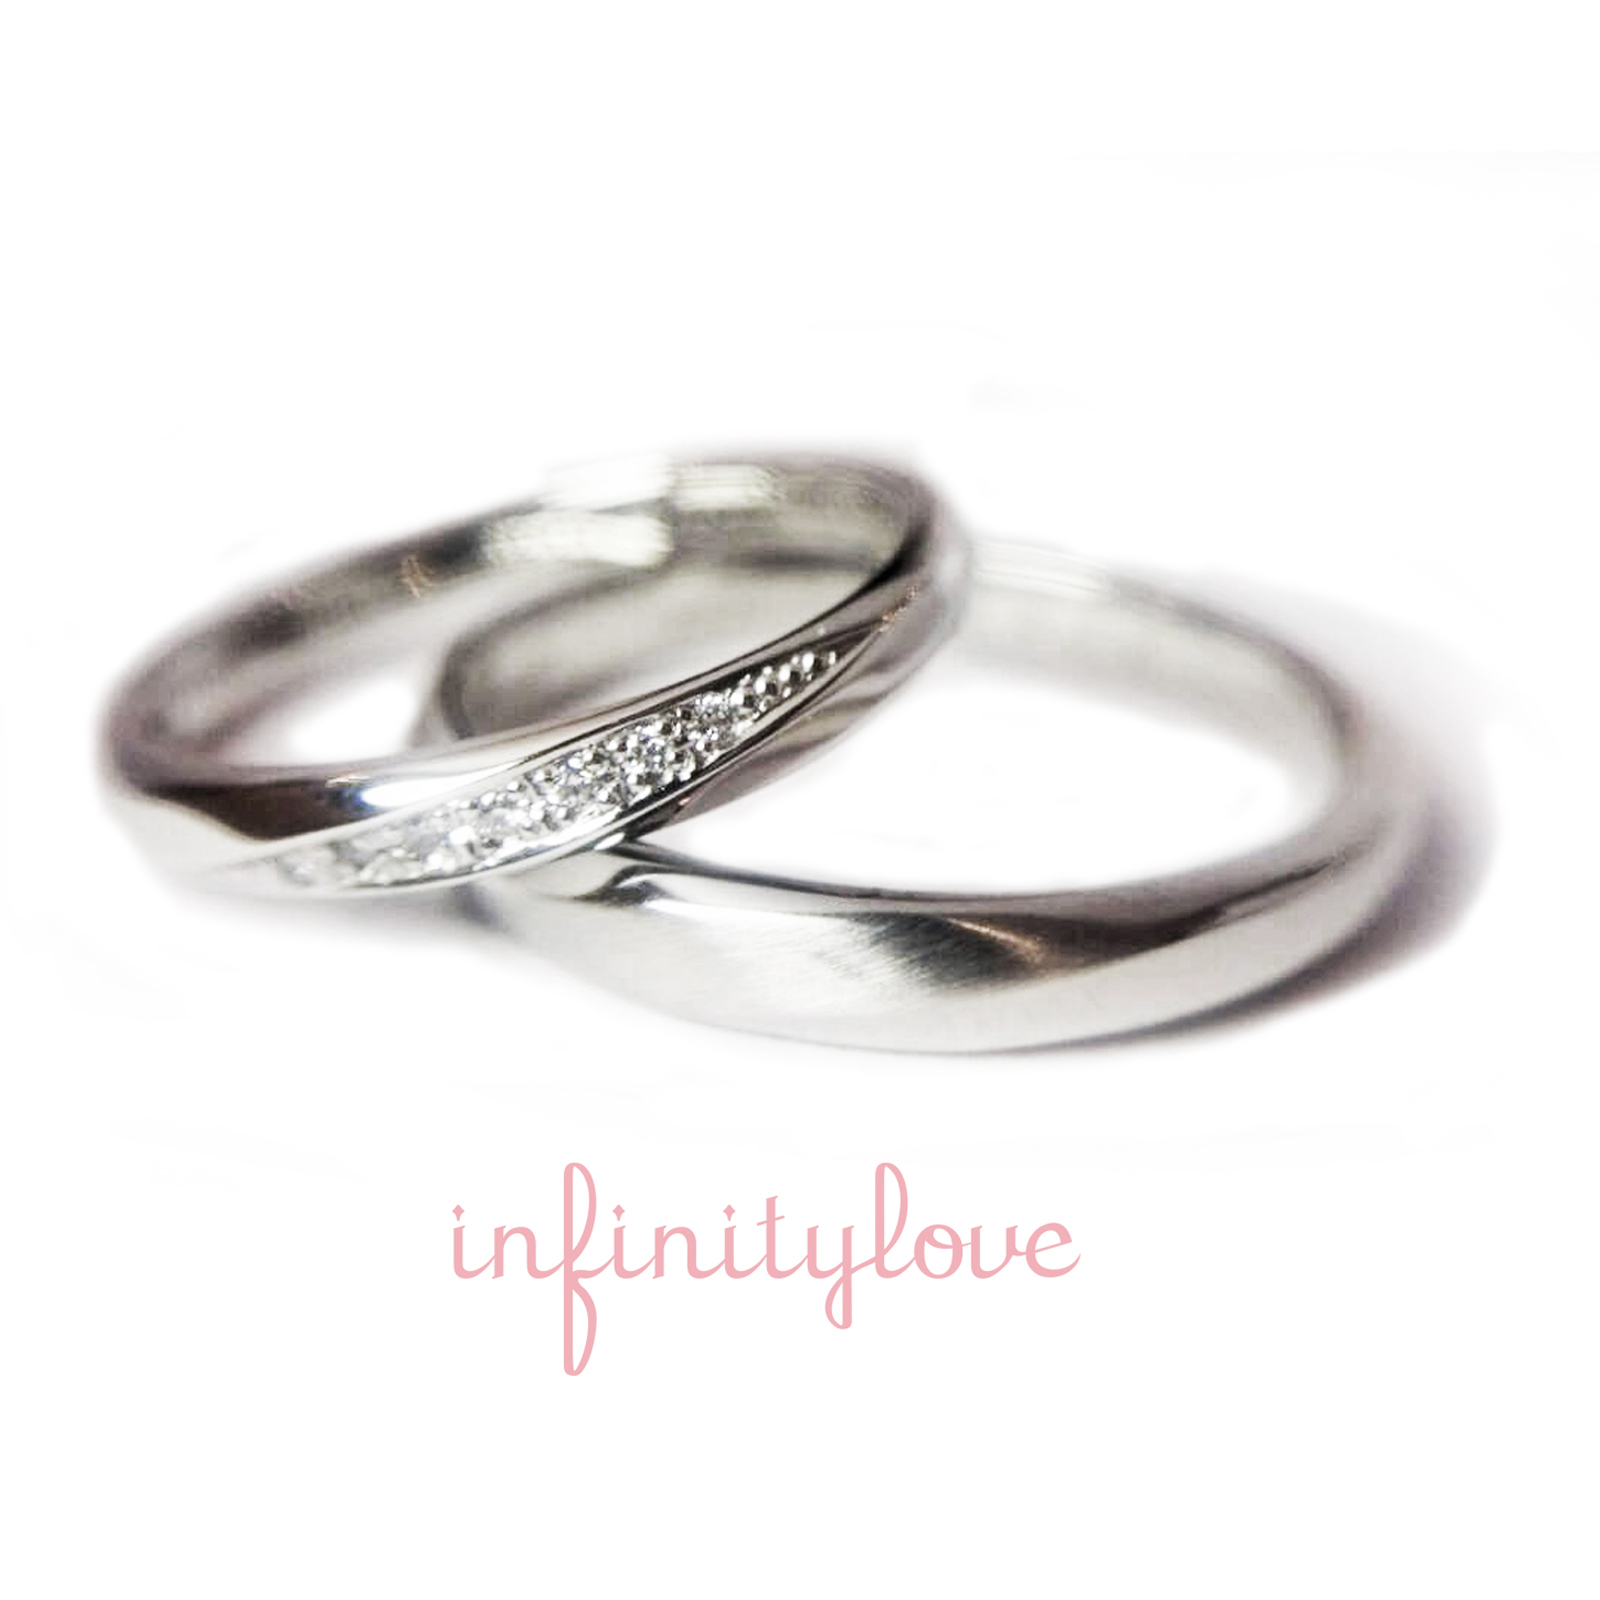 ダイヤモンドラインが美しいボリューム感のあるプラチナの結婚指輪です。